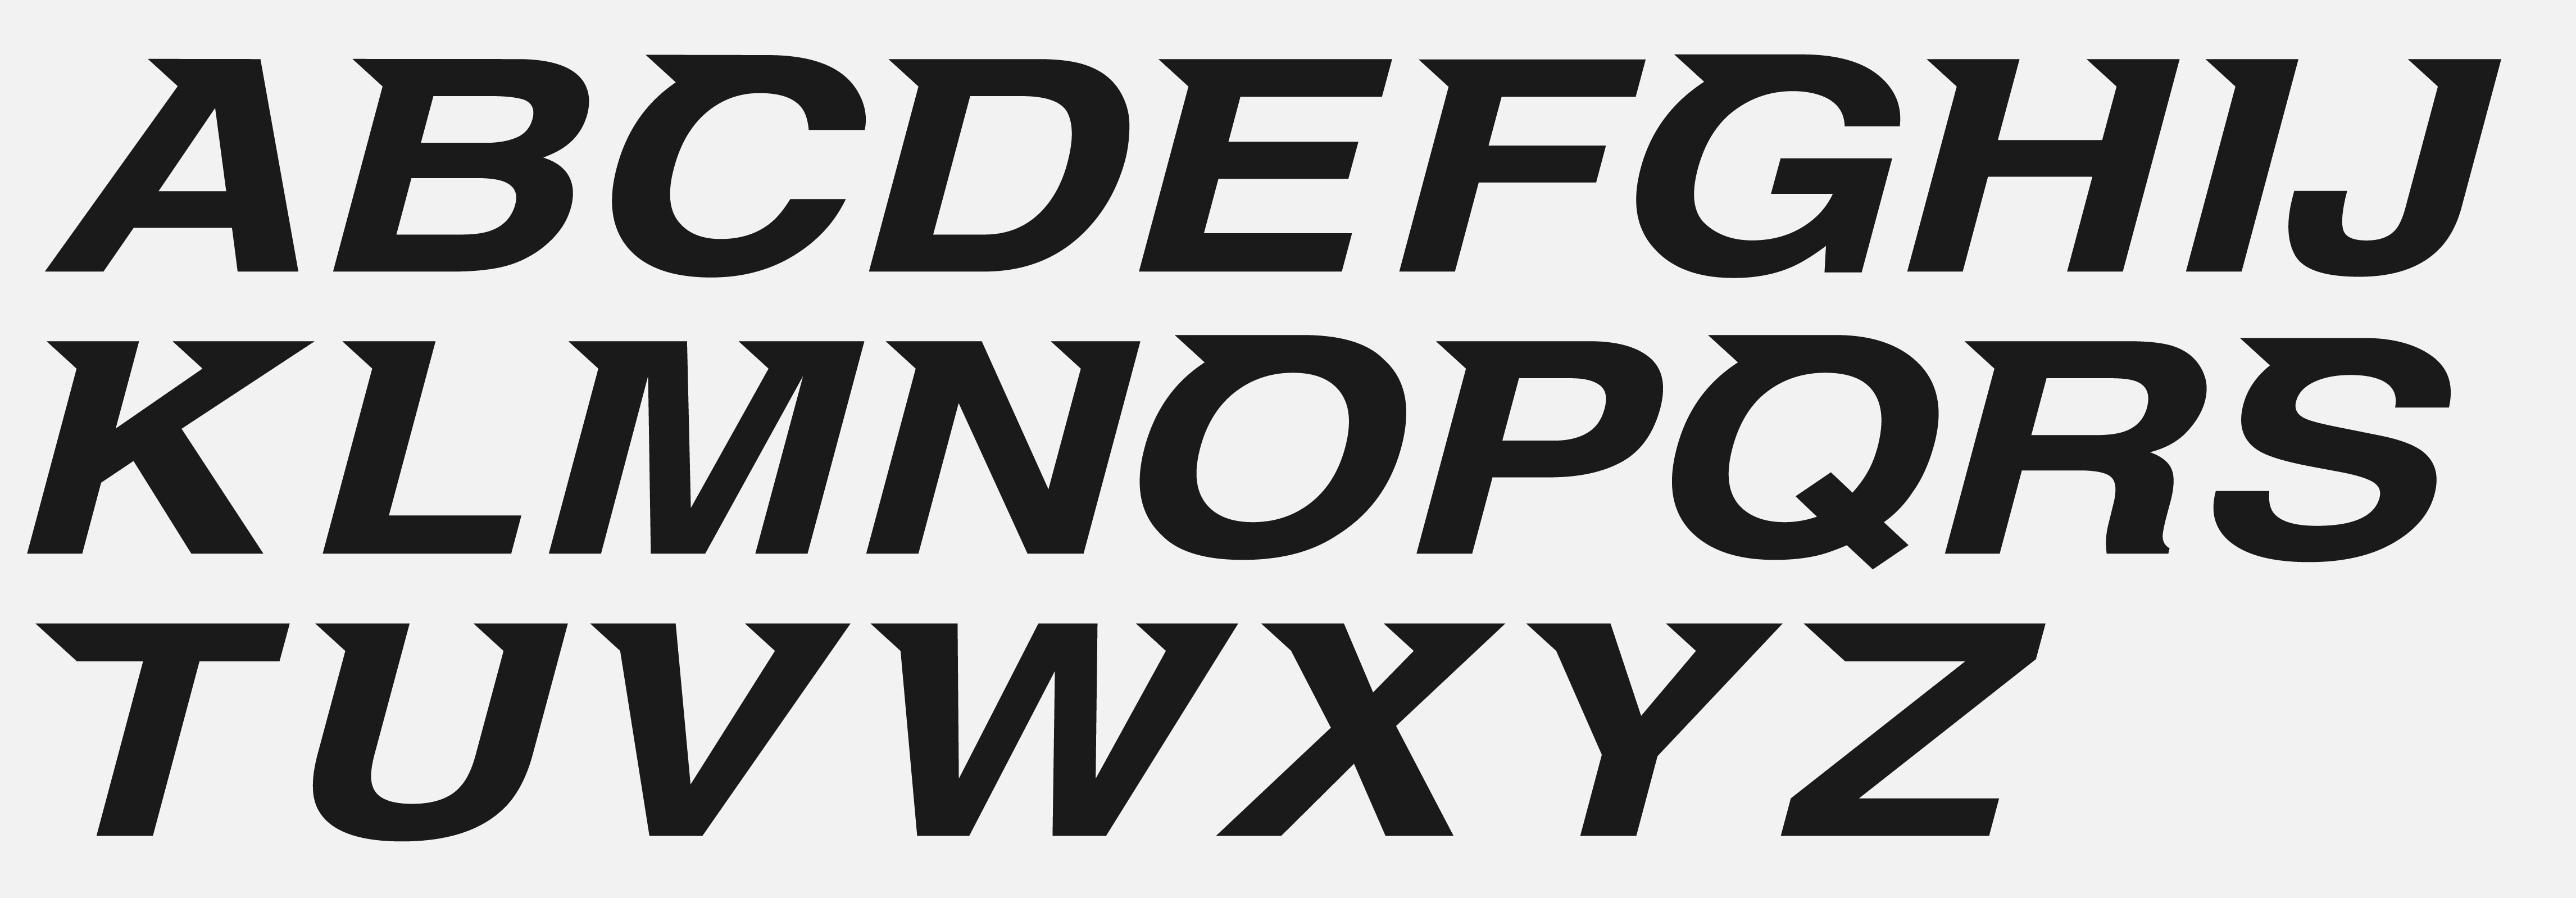 Iron-Lady-Typography_Type-3